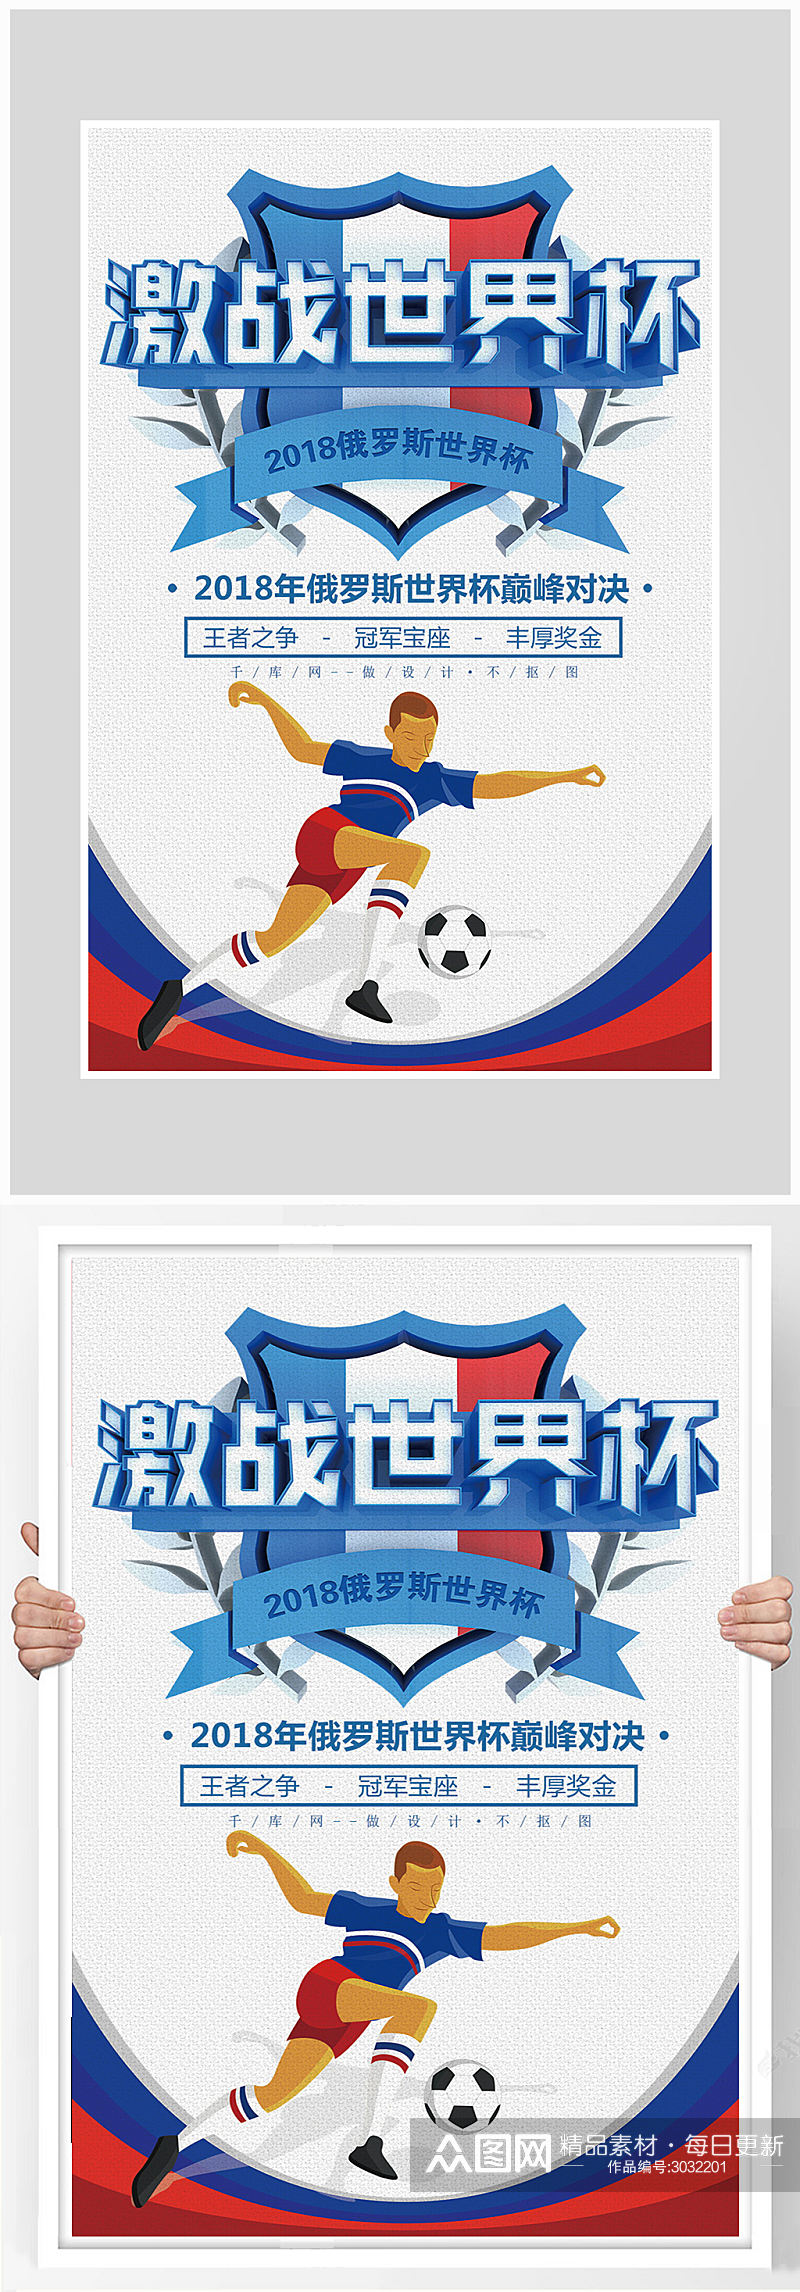 创意激战世界杯足球比赛海报设计素材